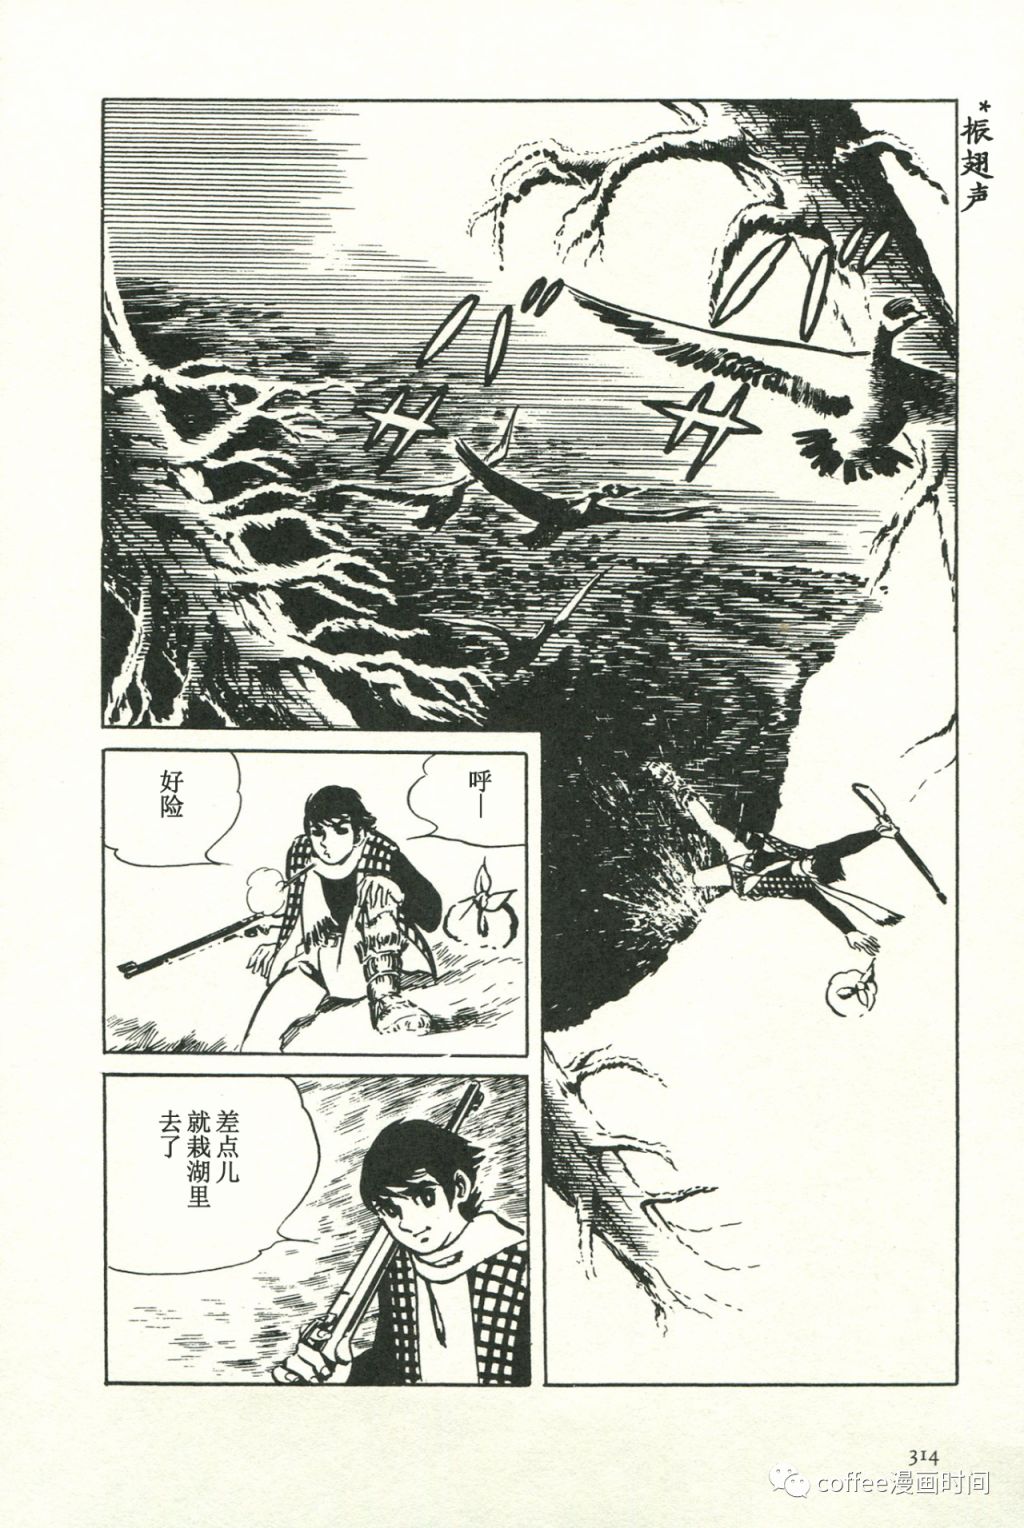 日本短篇漫畫傑作集 - 池上遼一《禁獵區》 - 4